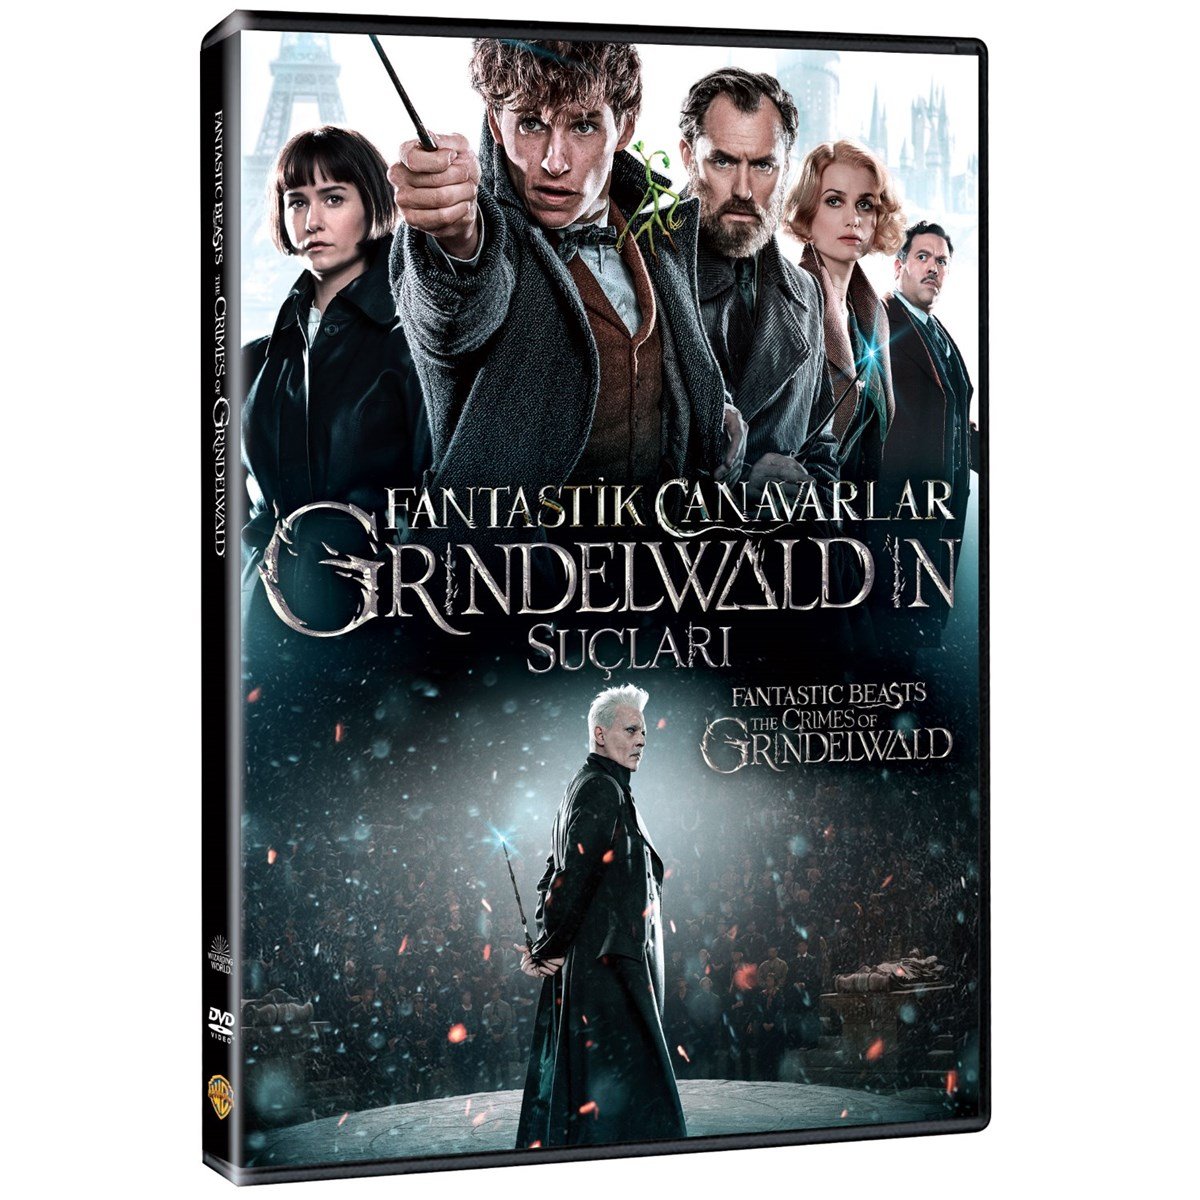 Fantastik Canavarlar 2: Grindewald'in Suçları - DVD